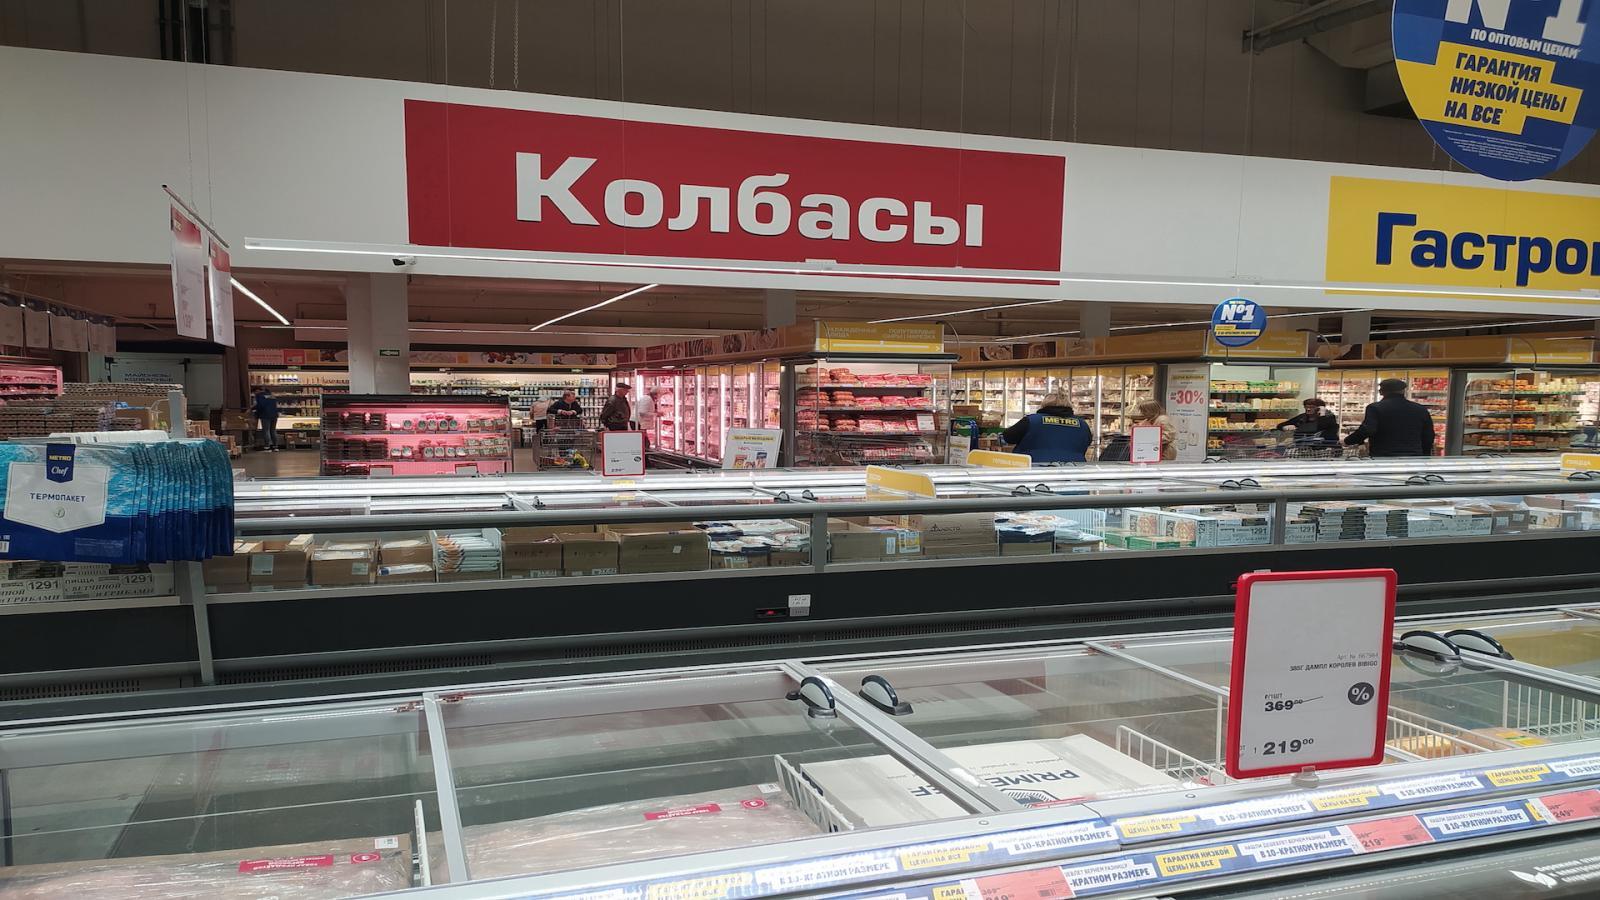 Продукты подешевеют в России